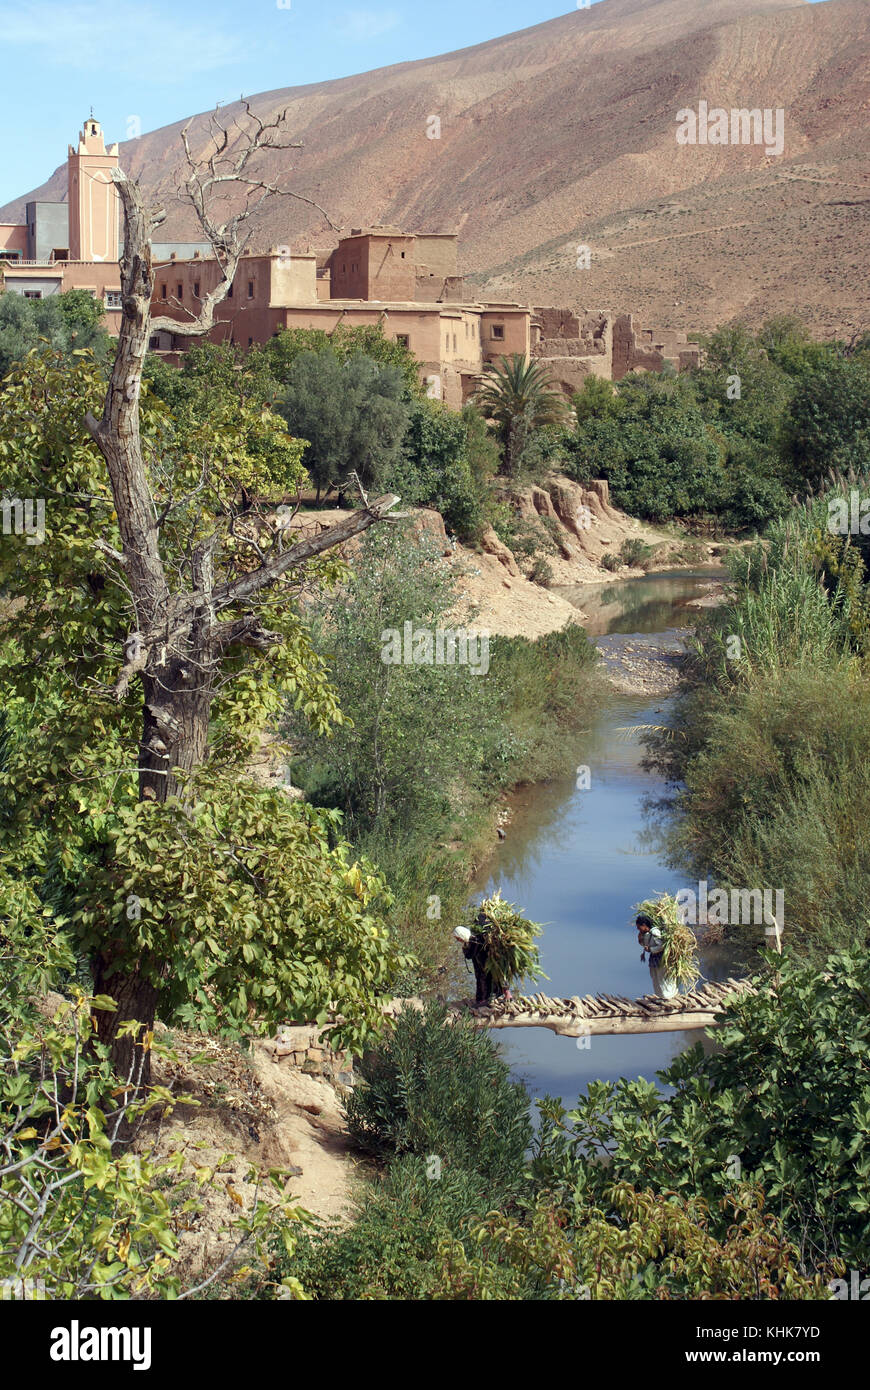 Deux femmes sur le pont dans le village, bulman dodes, Maroc Banque D'Images